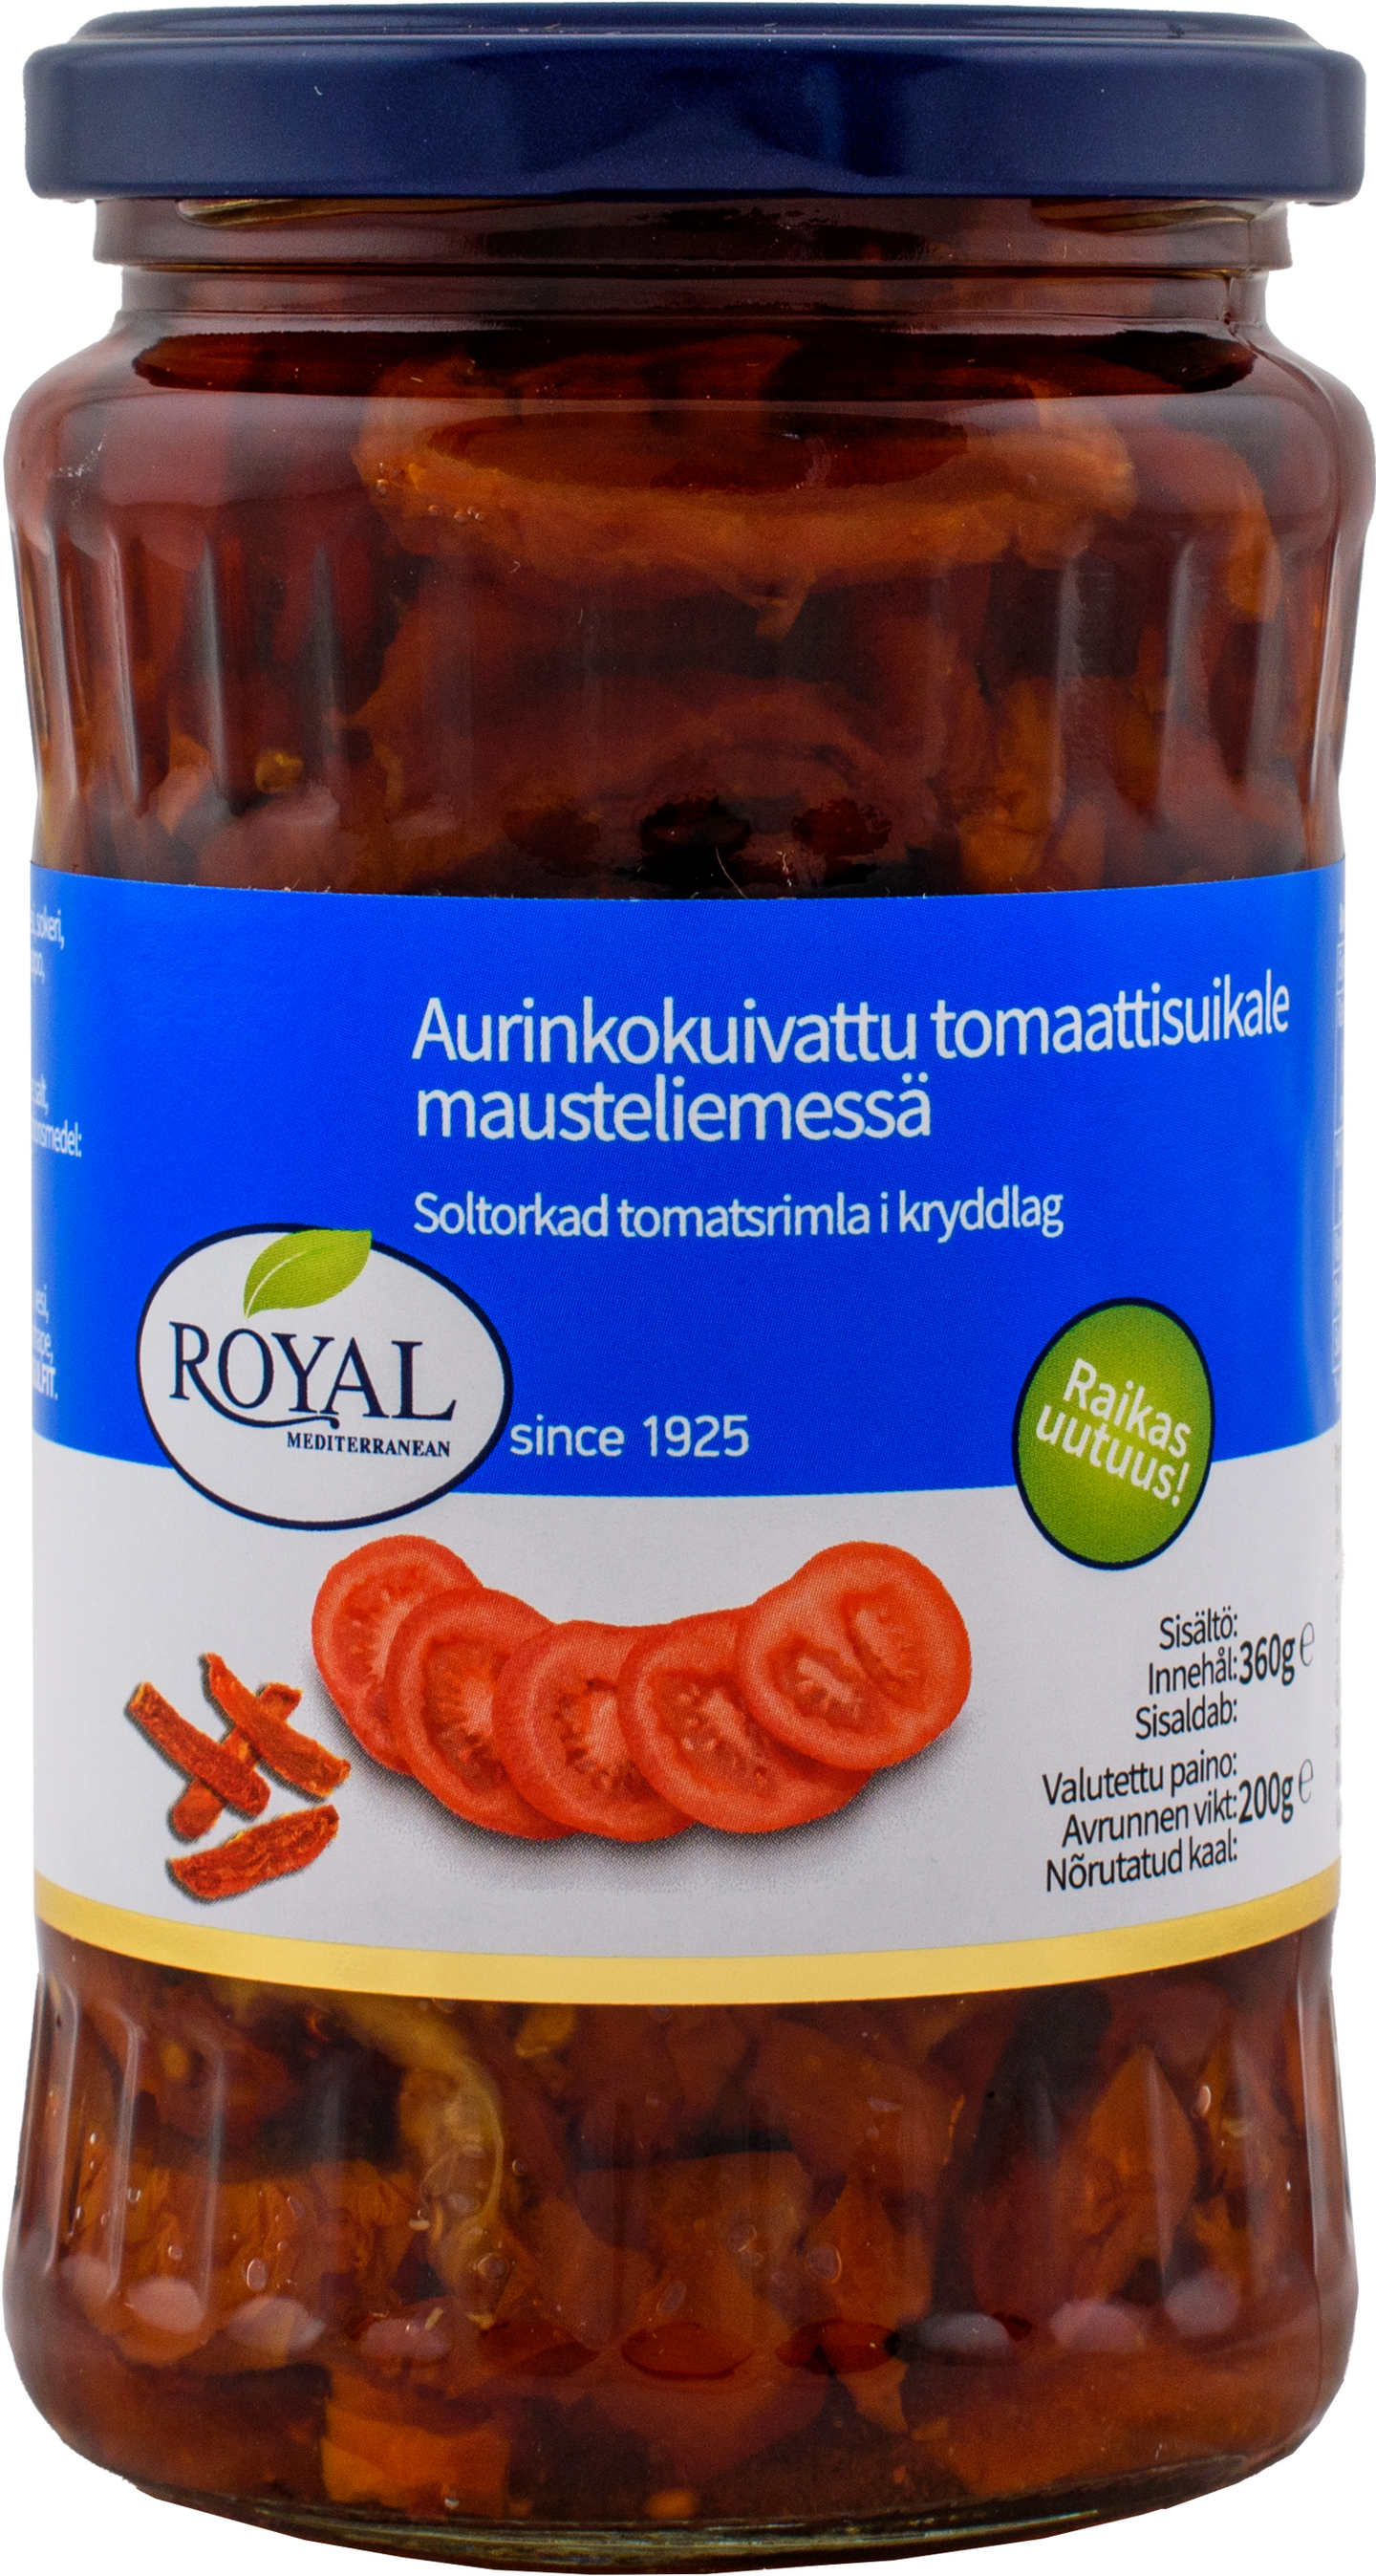 Royal aurinkokuivattu tomaattisuikale mausteliemessä 360g/200g